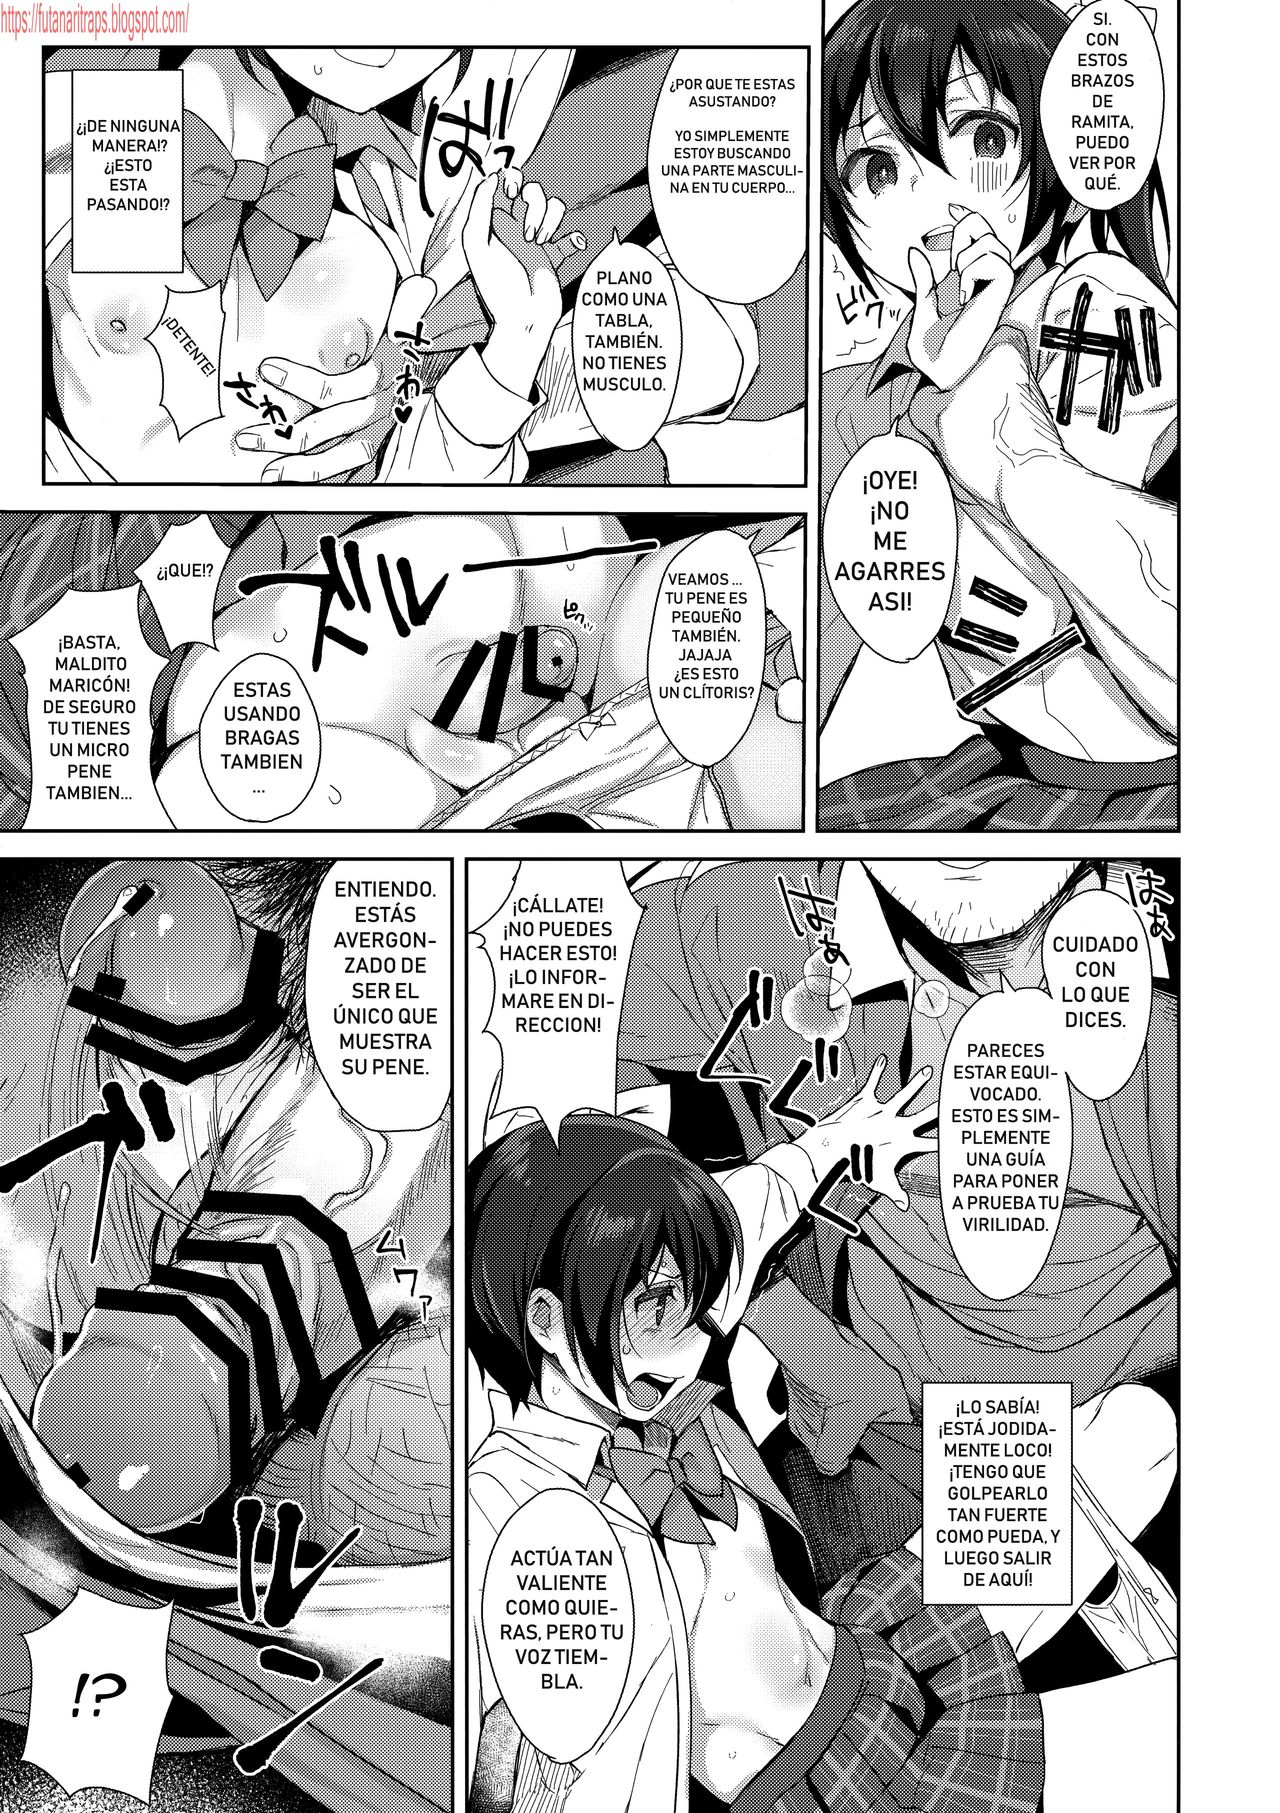 1280px x 1813px - Mesu Gao Complex - Page 6 - Comic Porn XXX